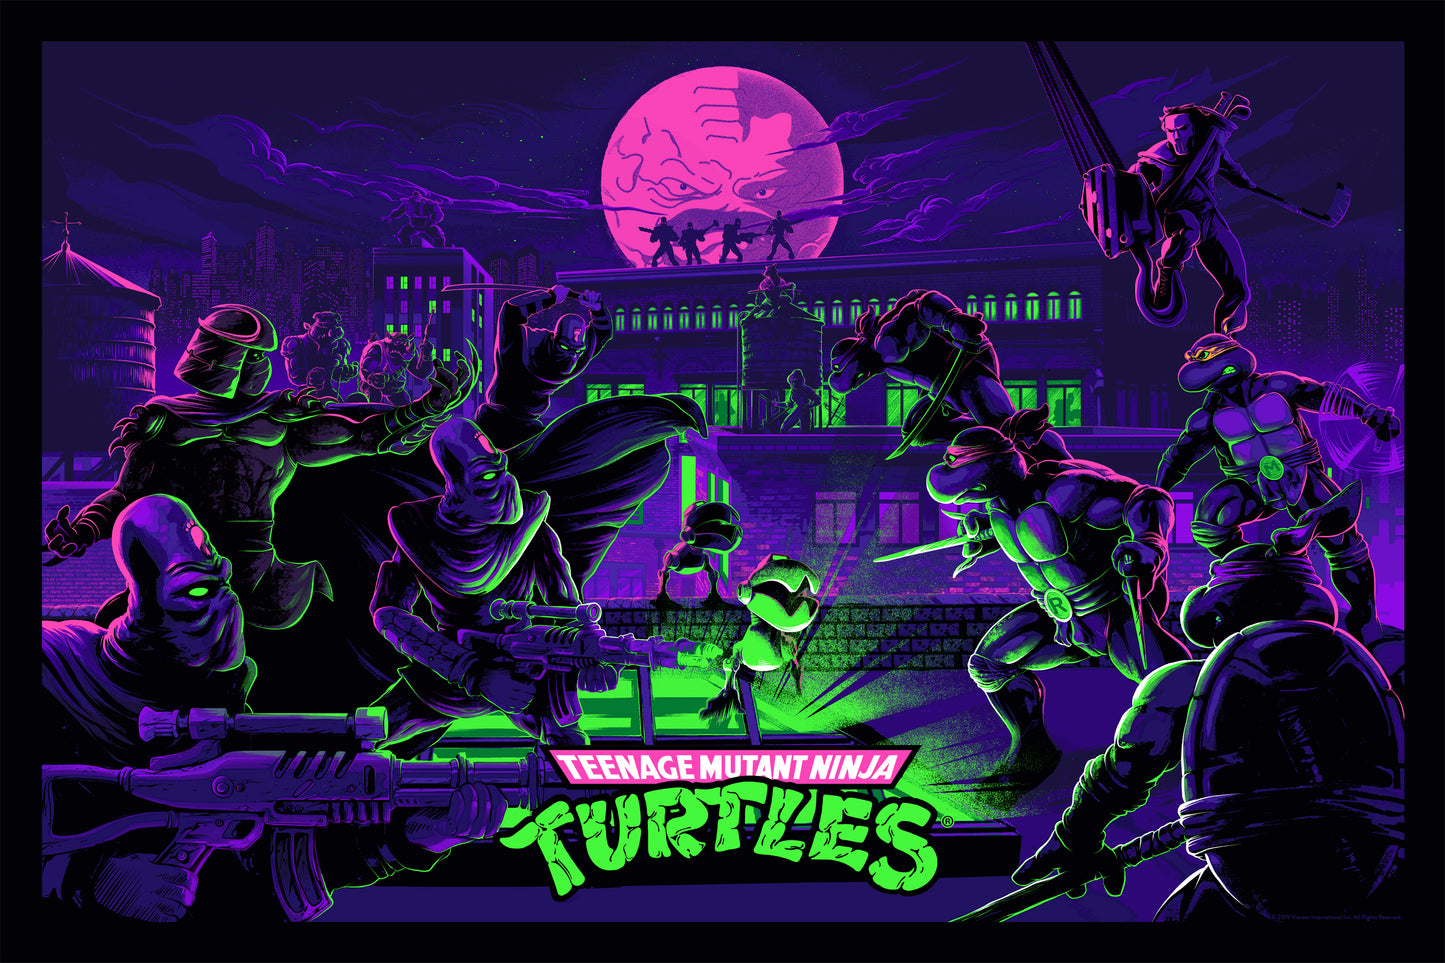 Juan Ramos "Teenage Mutant Ninja Turtles"